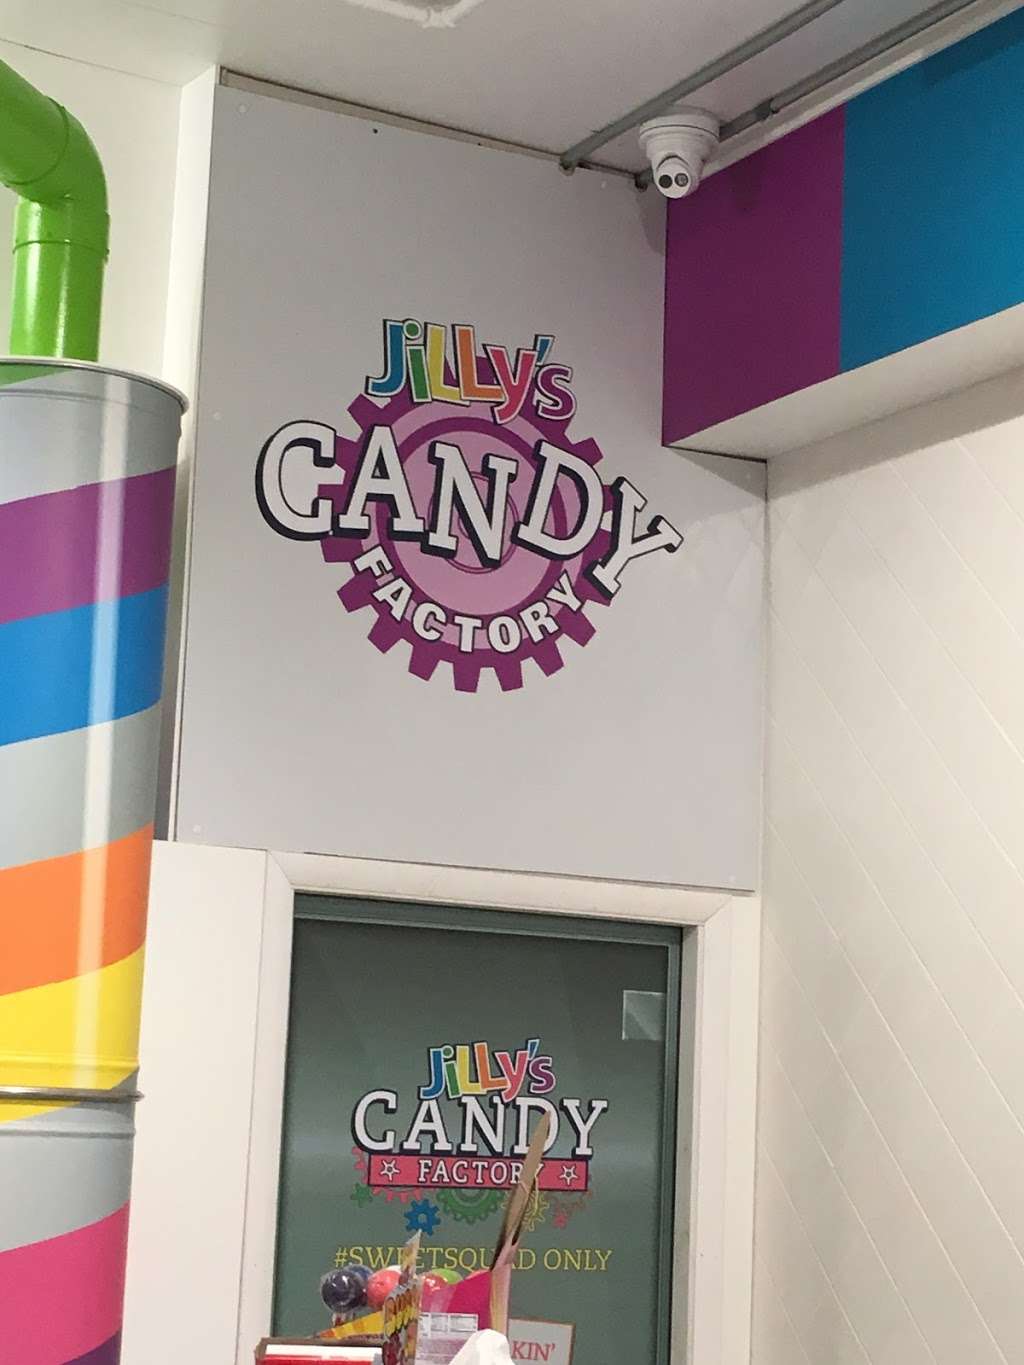 JiLLys Candy Factory | 3335, 1040 Boardwalk, Ocean City, NJ 08226 | Phone: (609) 385-1234